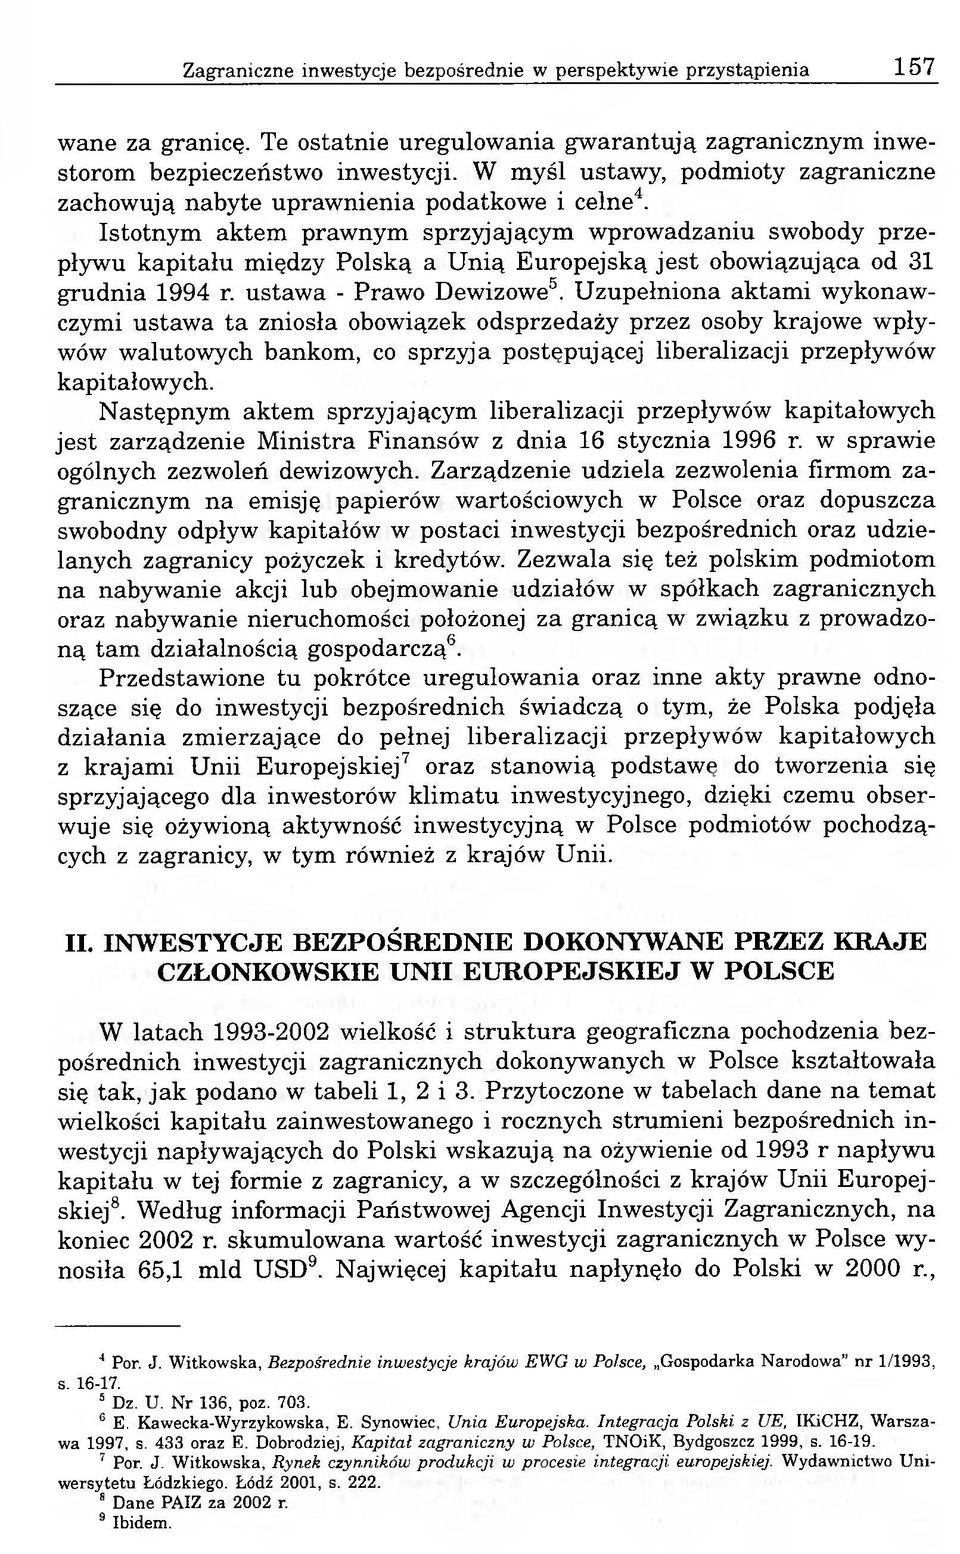 Istotnym aktem prawnym sprzyjającym wprowadzaniu swobody przepływu kapitału między Polską a Unią Europejską jest obowiązująca od 31 grudnia 1994 r. ustawa - Prawo Dewizowe5.